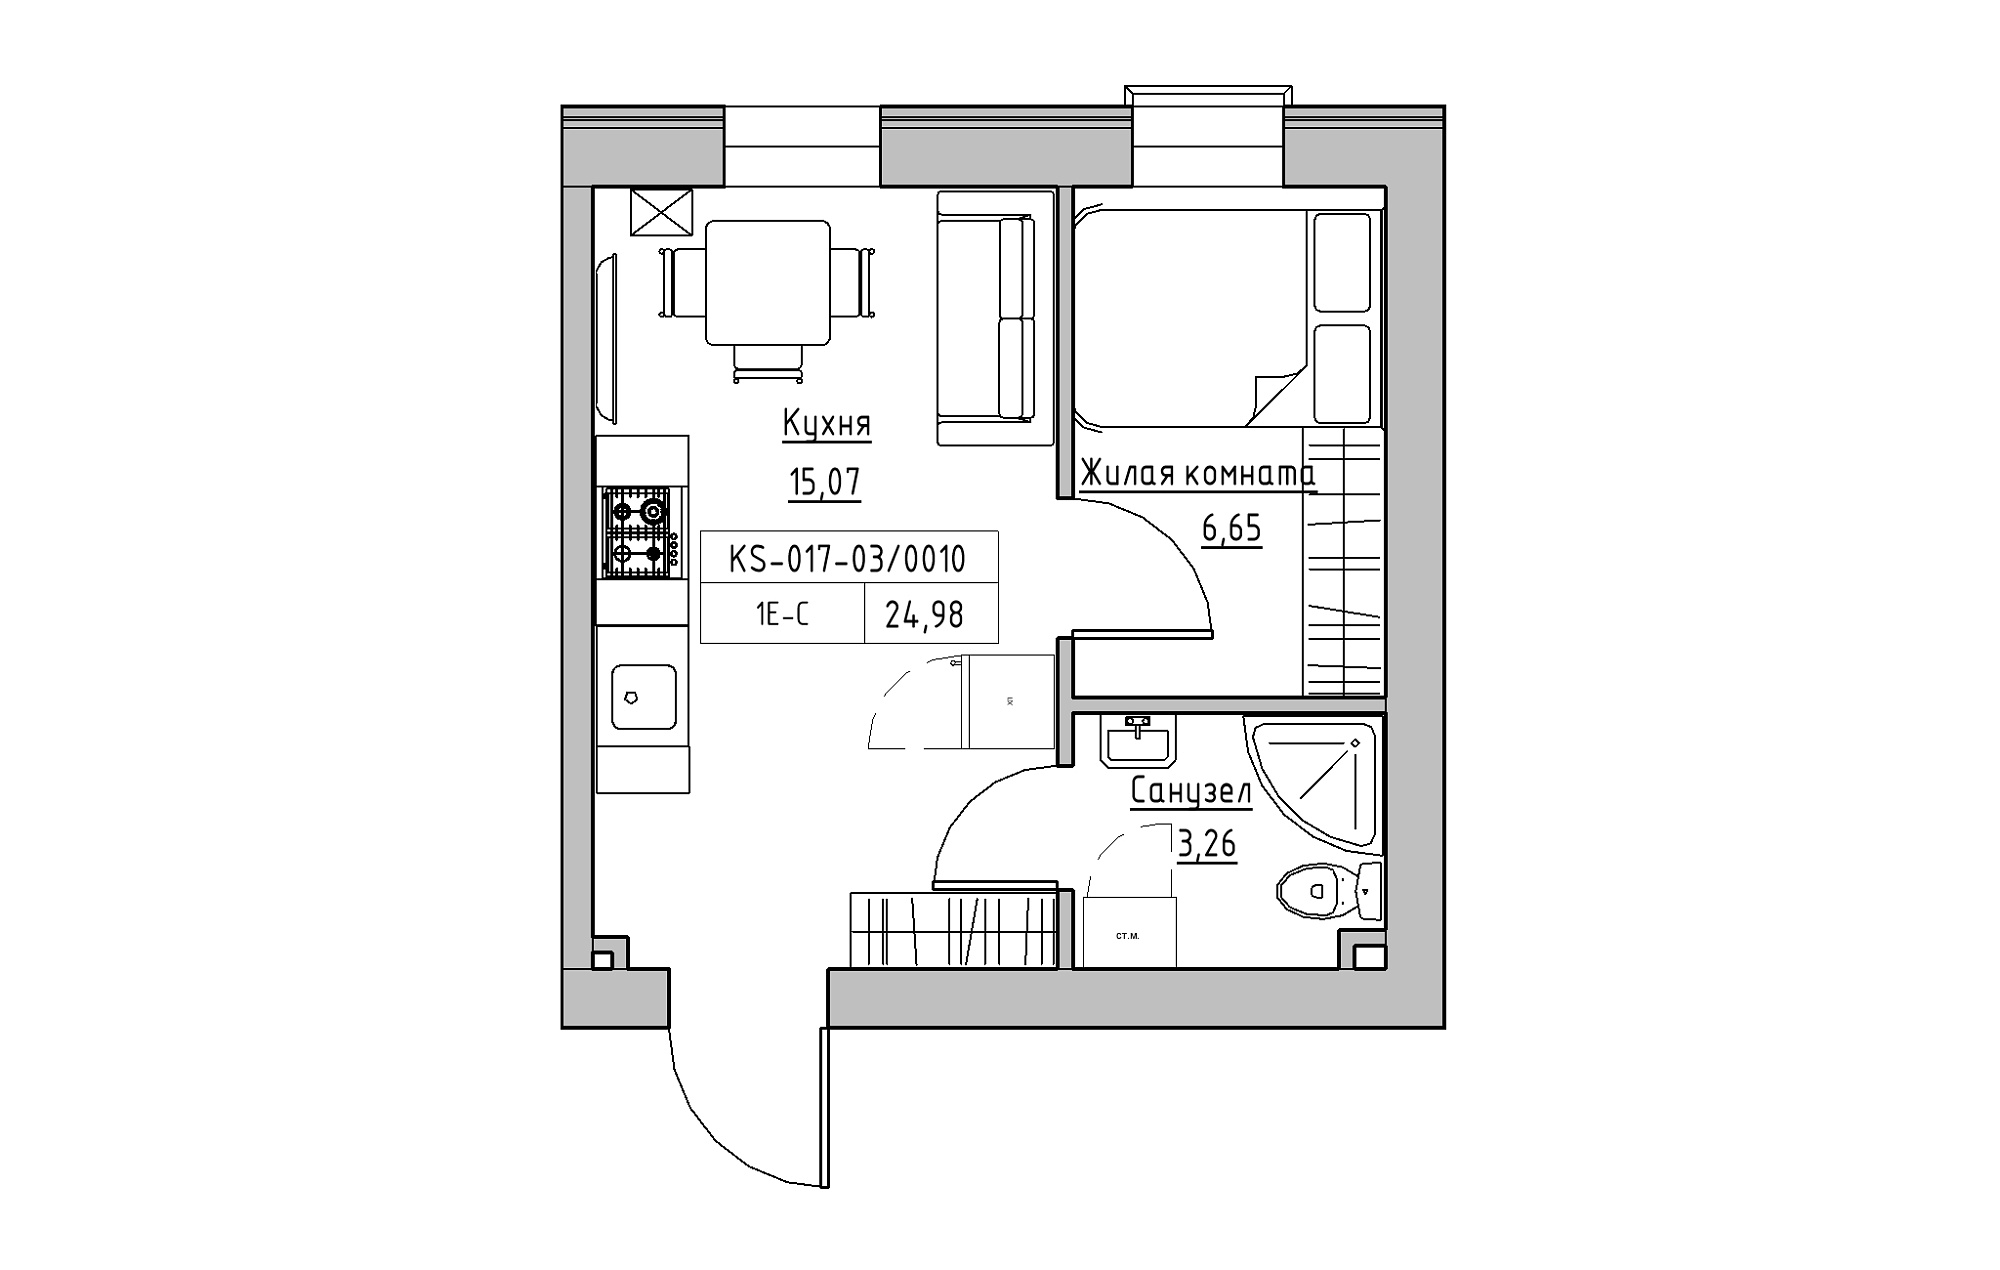 Планування 1-к квартира площею 24.98м2, KS-017-03/0010.